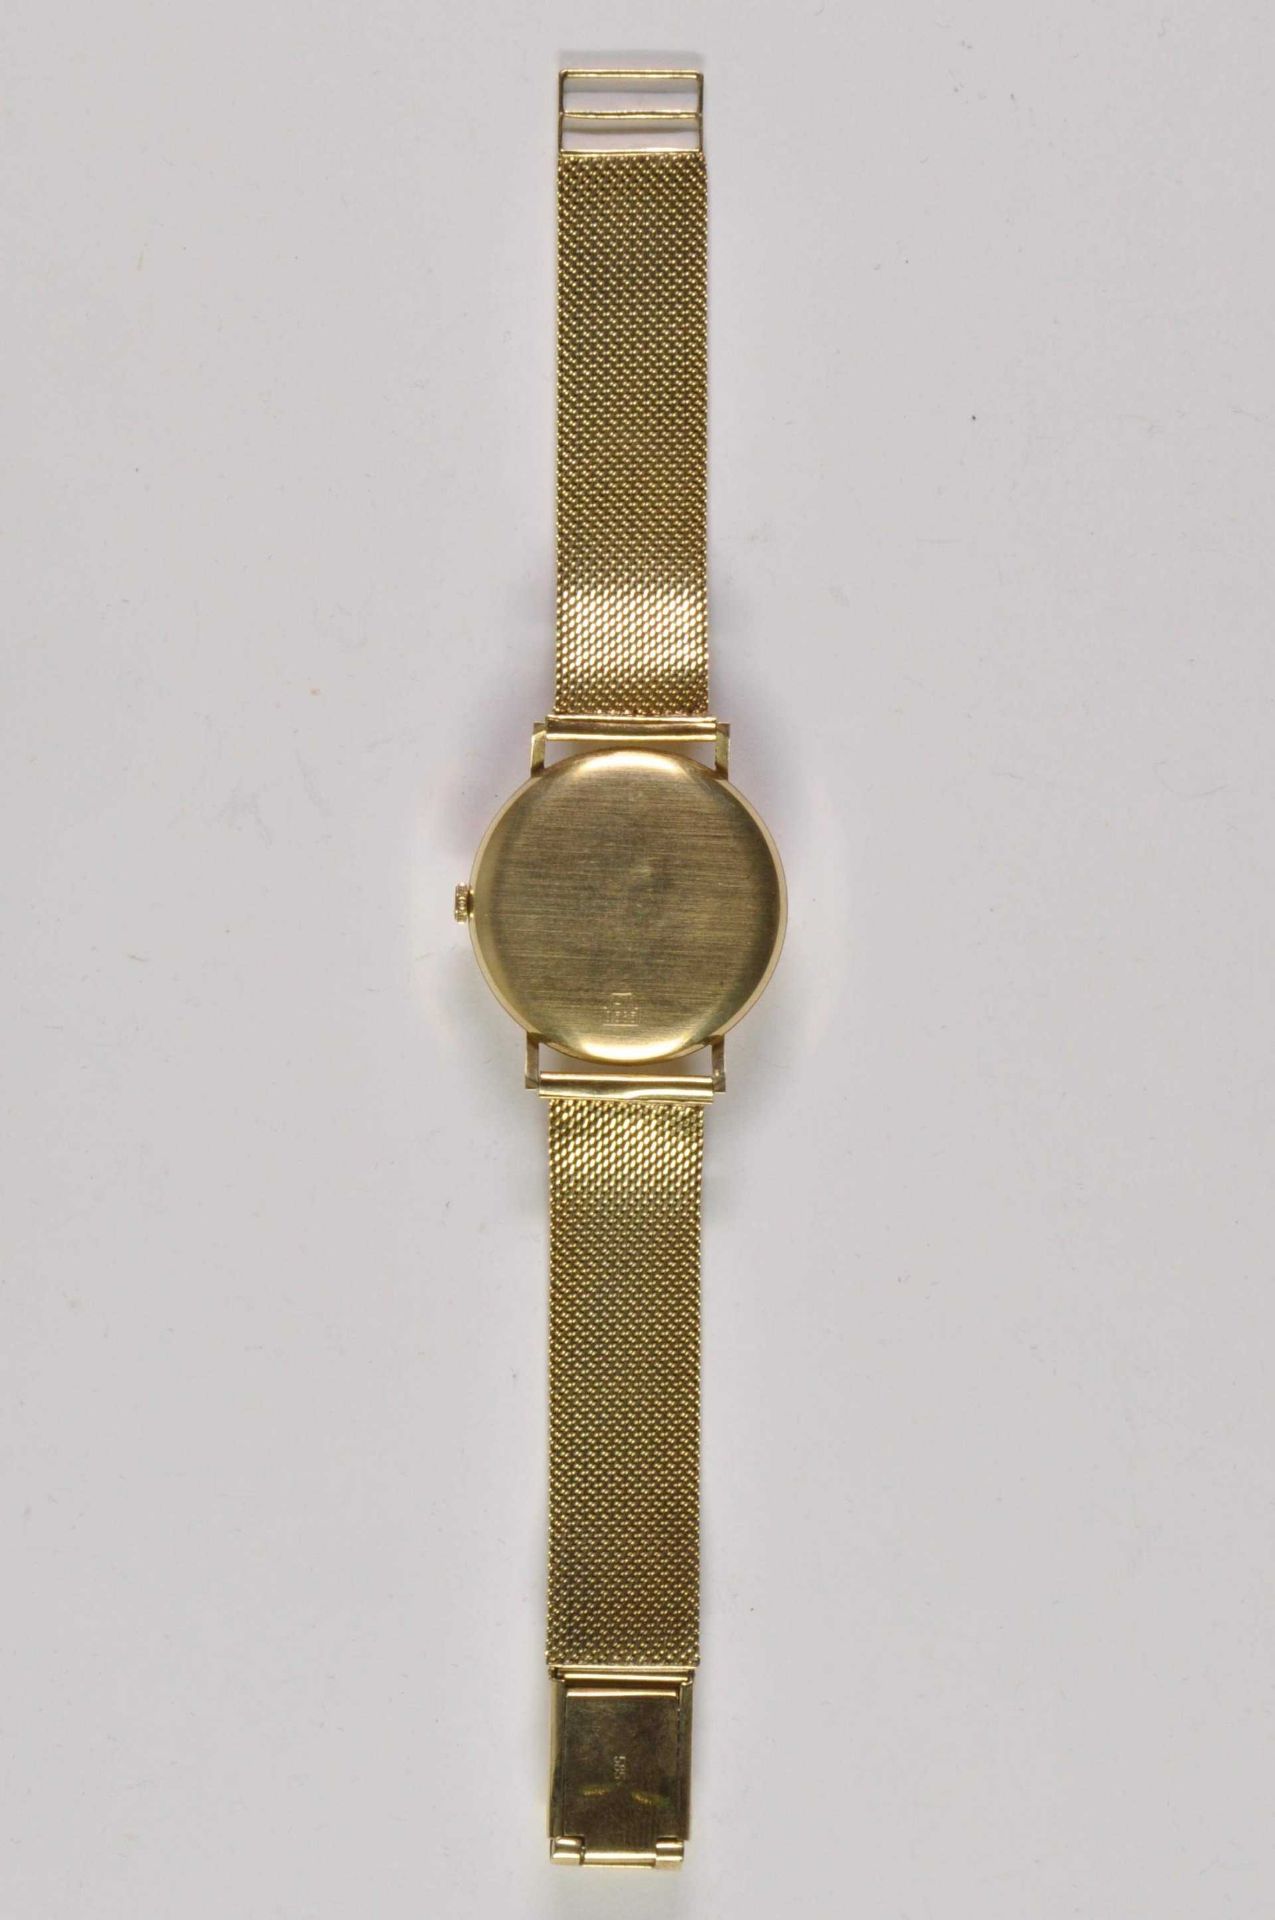 Stowa Herren Armbanduhr. Ca. 34mm, 585er Gold, Automatik. Silberfarbenes Ziffernblatt, goldene Indiz - Bild 3 aus 3